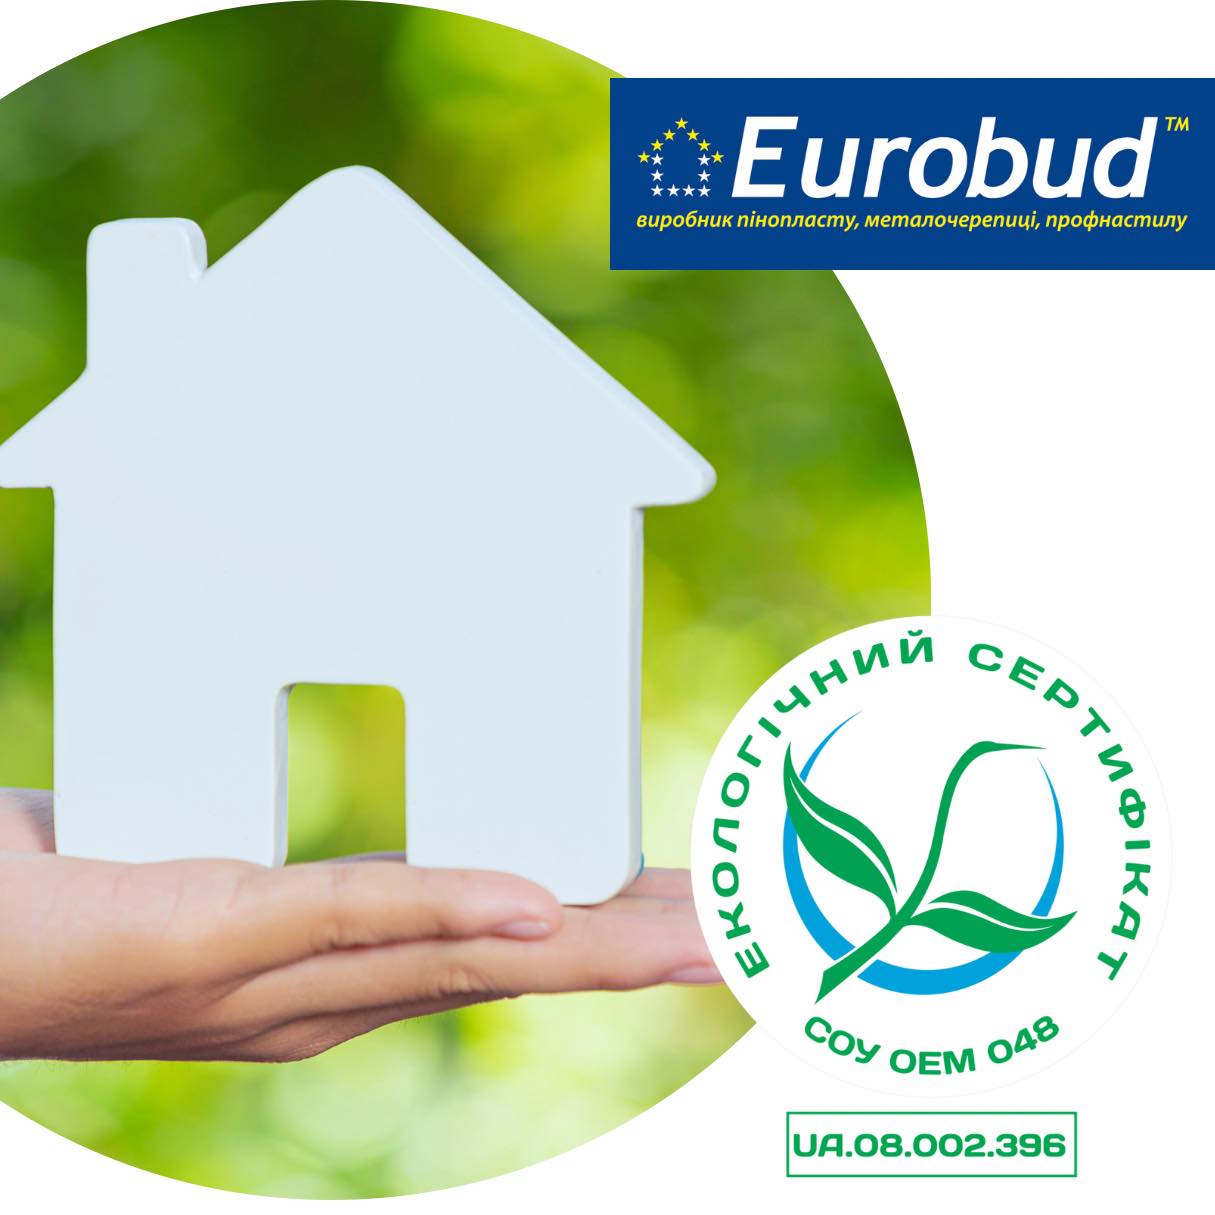 EUROBUD пройшла екологічний аудит та отримала сертифікат “Зелений журавлик”